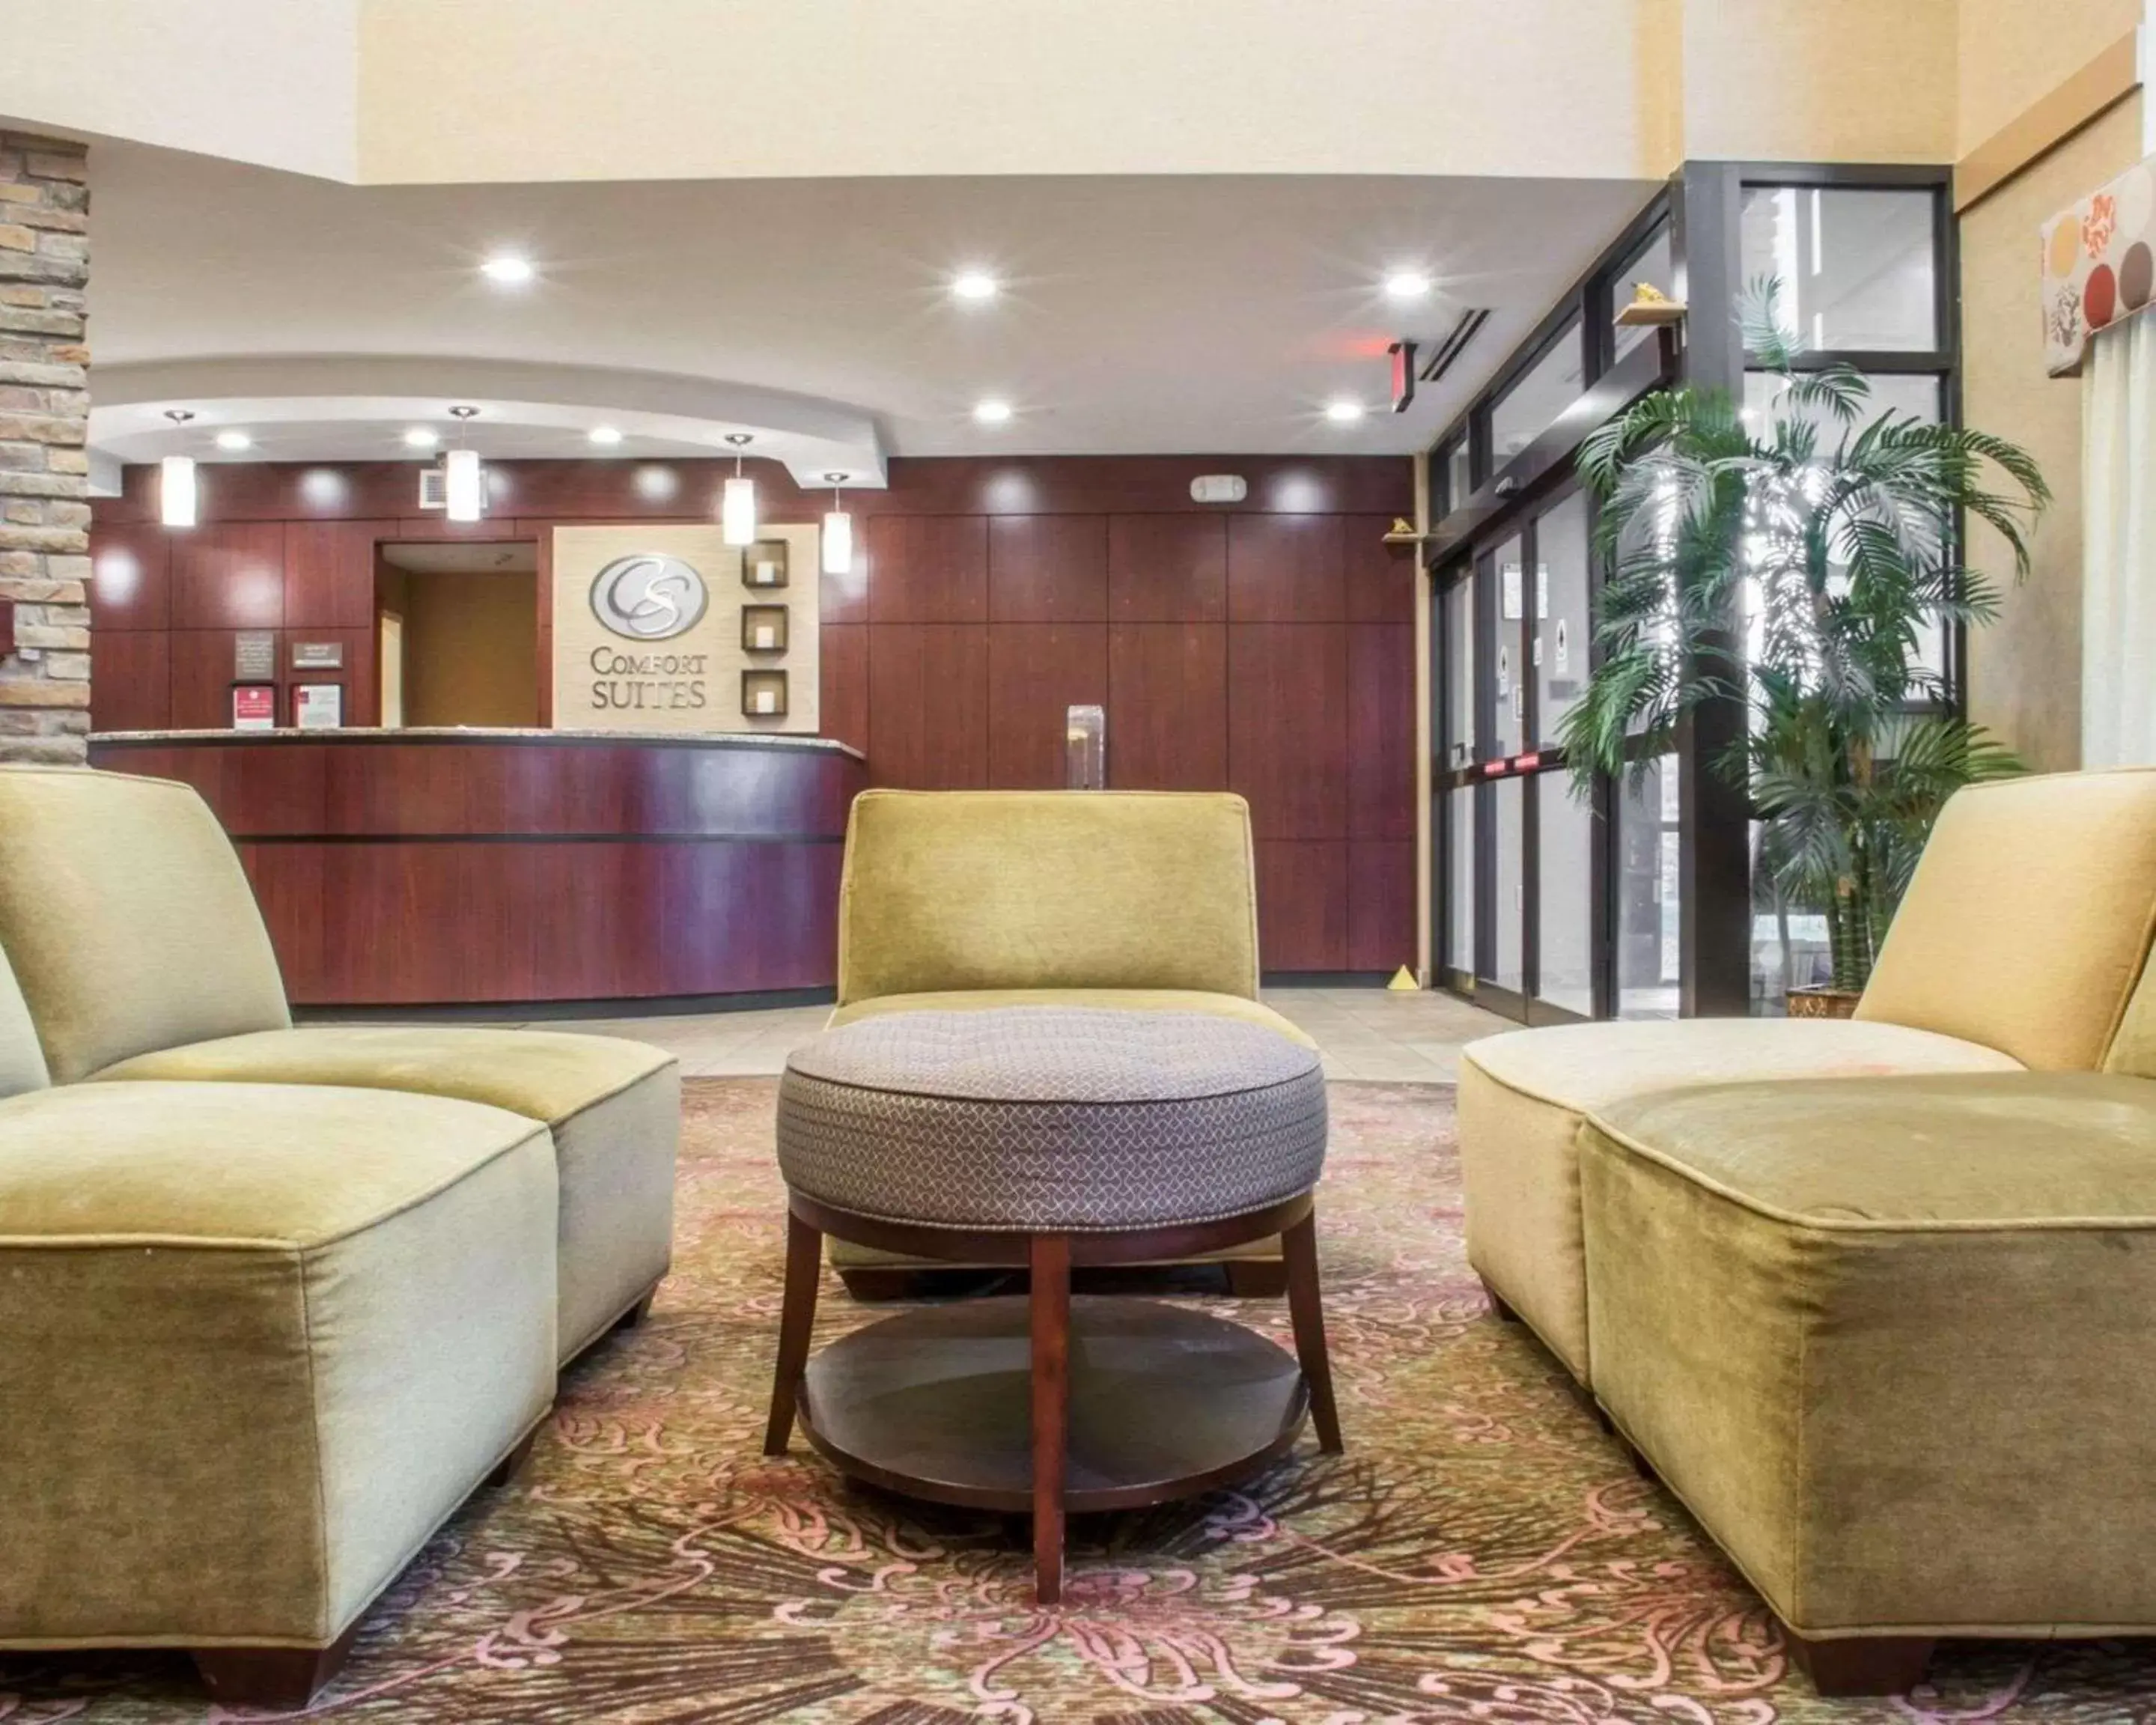 Lobby or reception, Lobby/Reception in Comfort Suites Cicero - Syracuse North